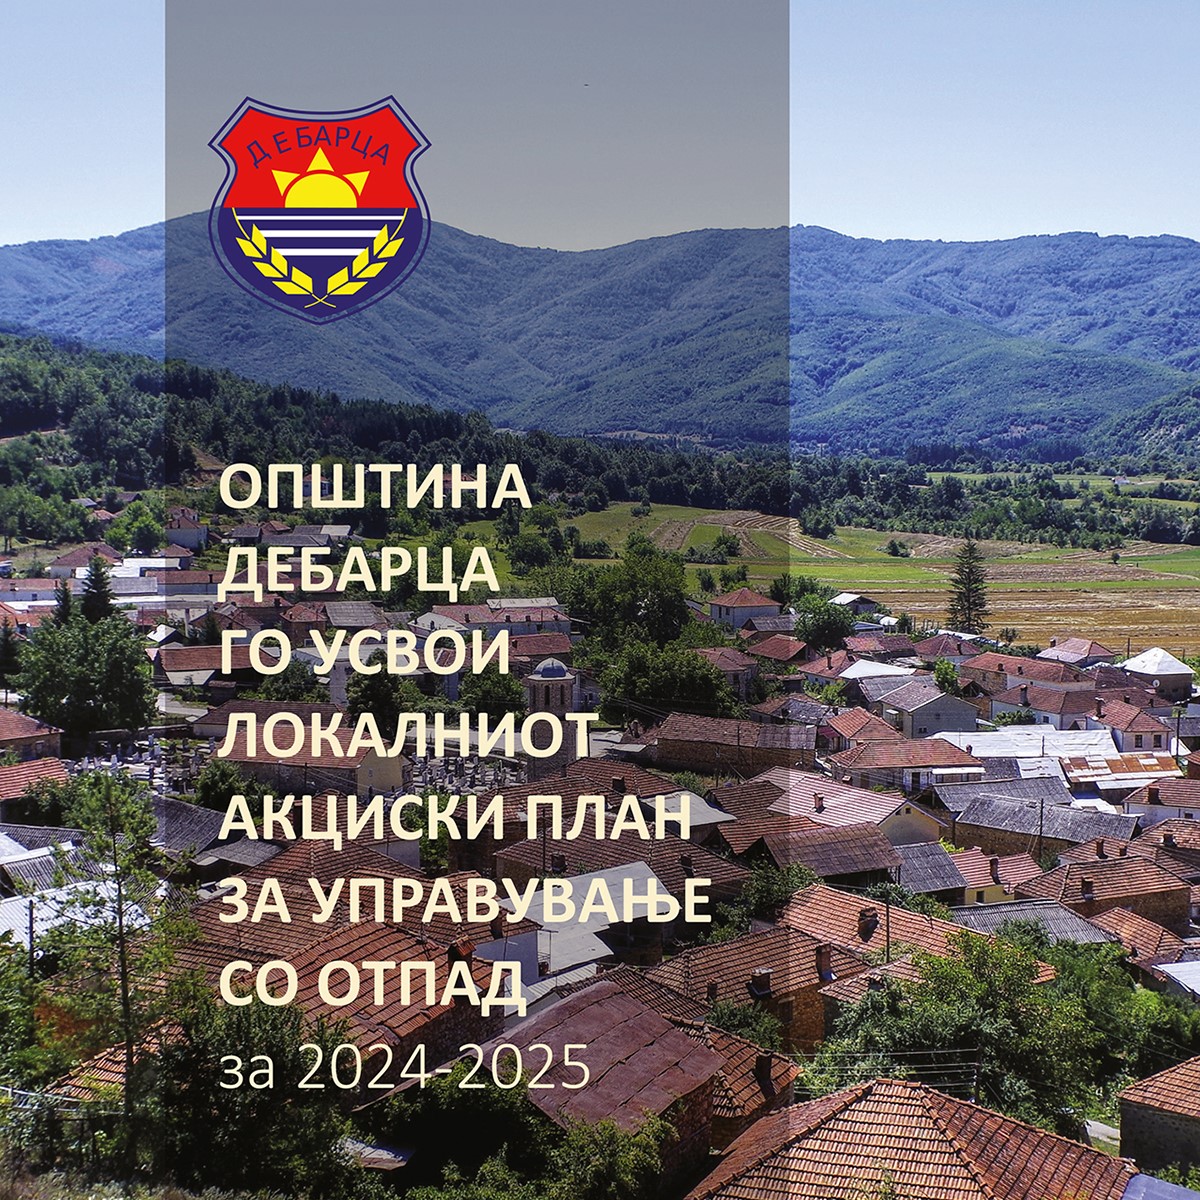 Општина Дебрца го усвои Локалниот акциски план за управување со отпад